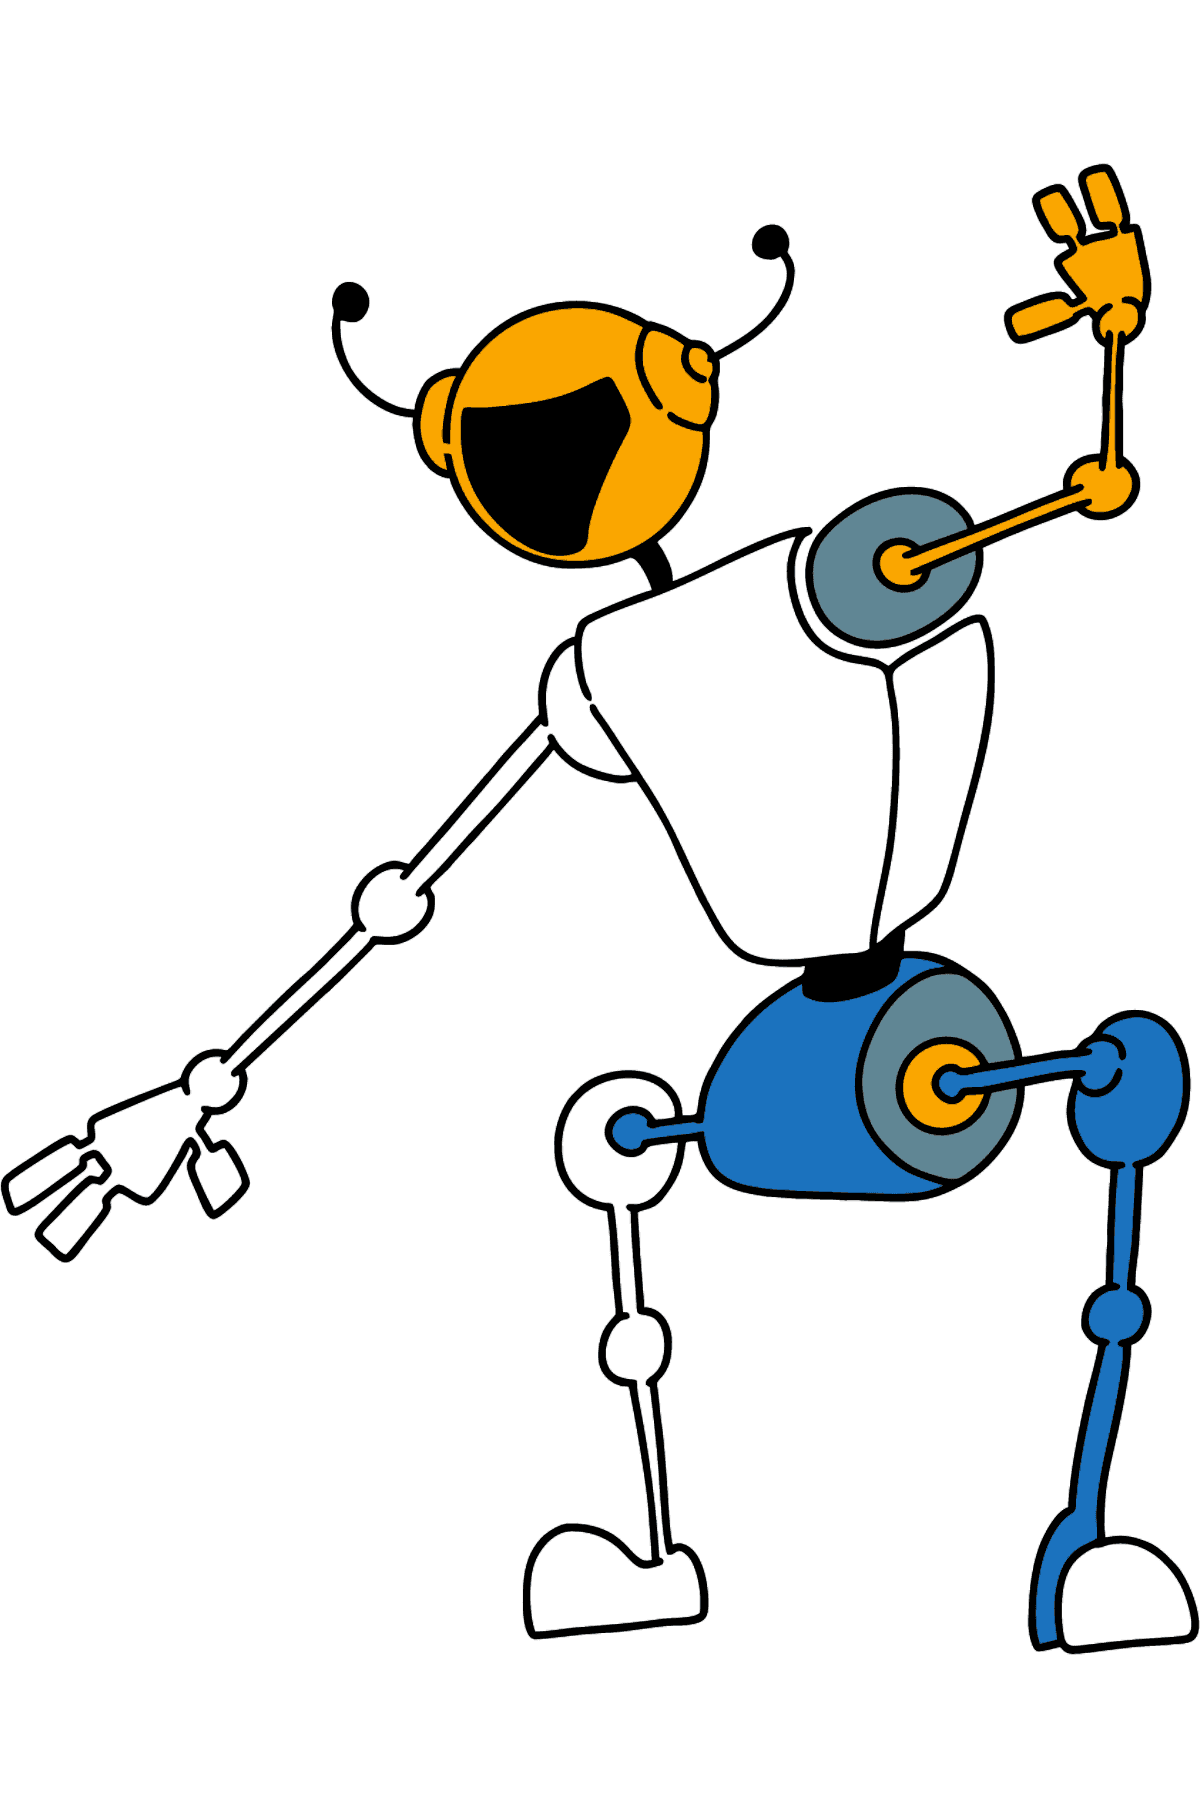 Раскраска Танцующий Робот - Картинки для Детей